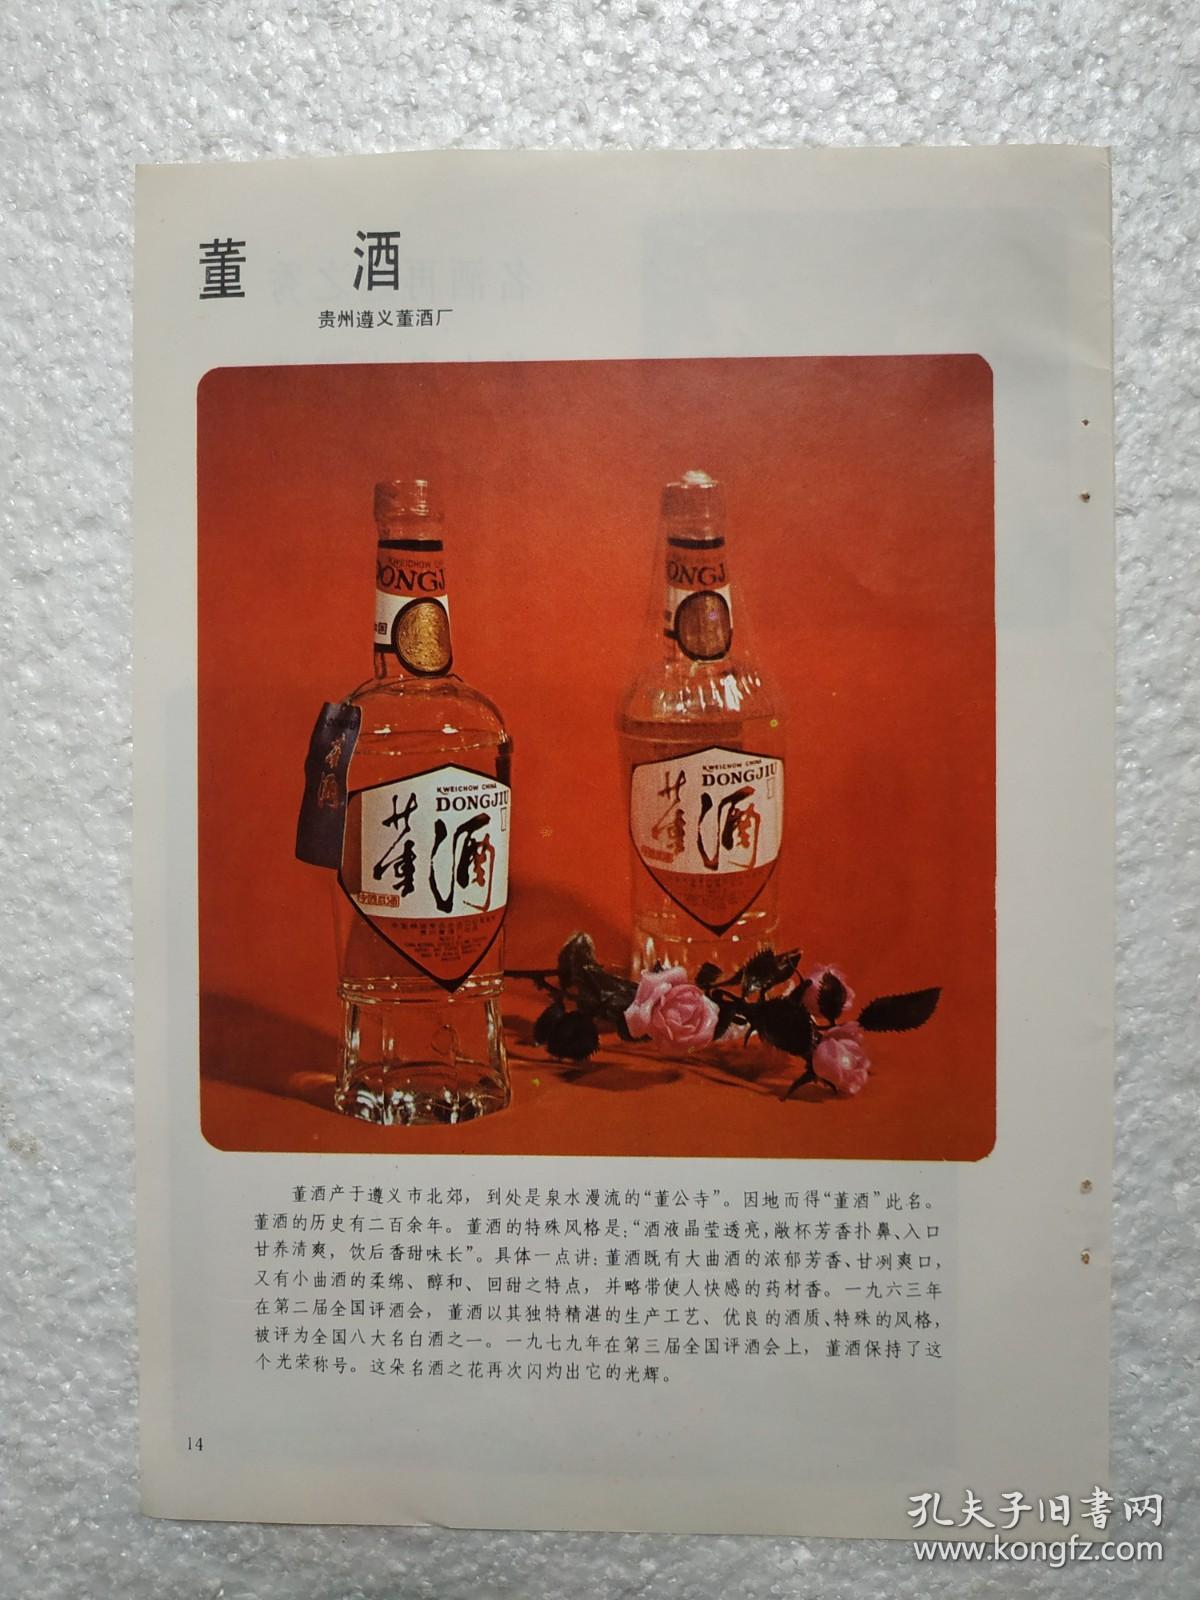 贵州酒，董酒，遵义董酒厂，洋河大曲酒，江苏洋河酒厂，酒厂广告，一页二面，八十年代